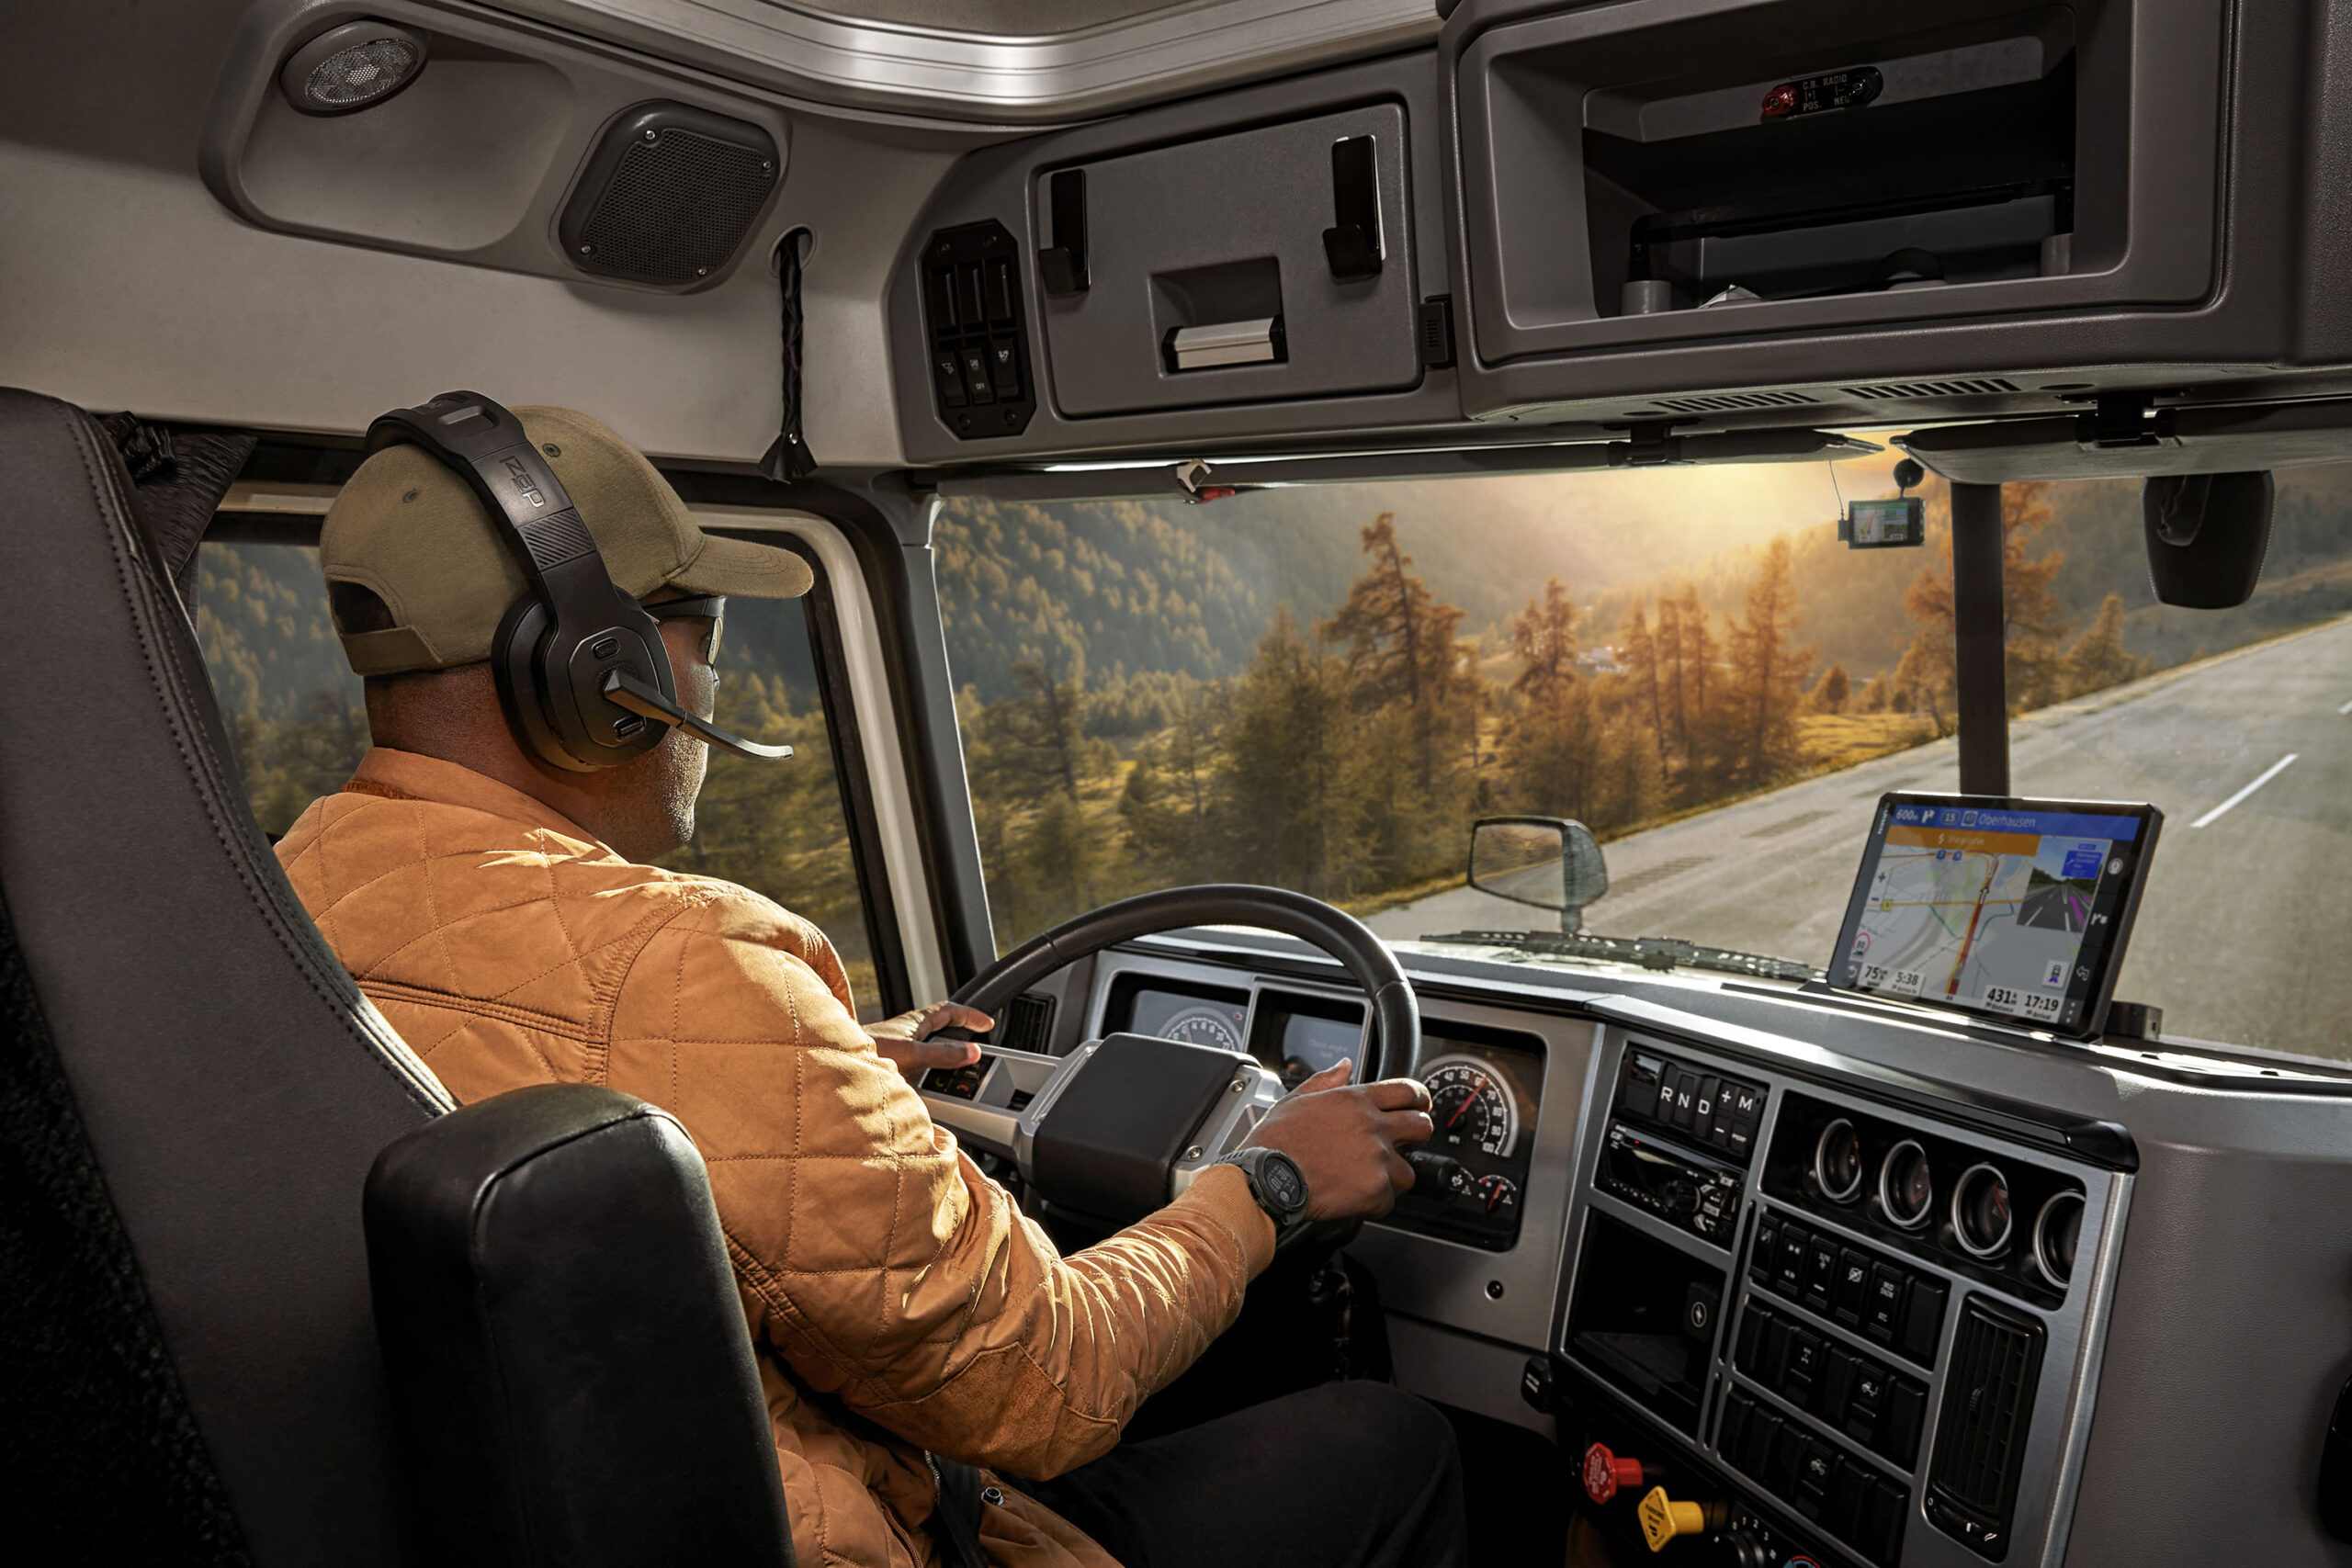 Camion: Garmin presenta le nuove cuffie wireless per un ottimo audio anche in ambienti rumorosi